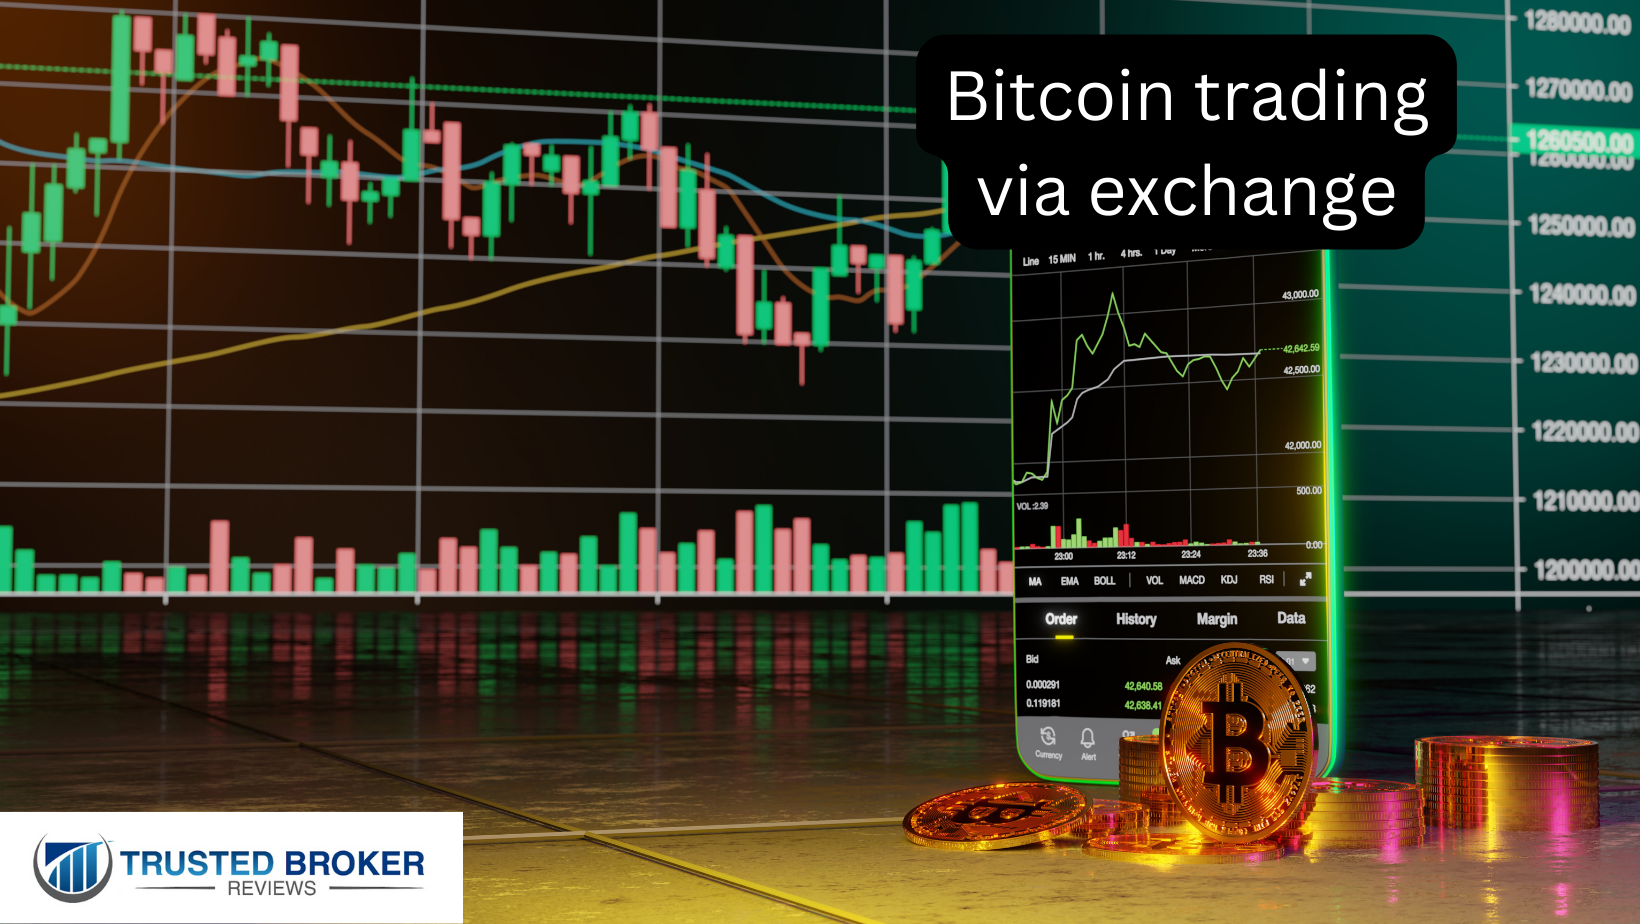 Negociação de bitcoin via exchange